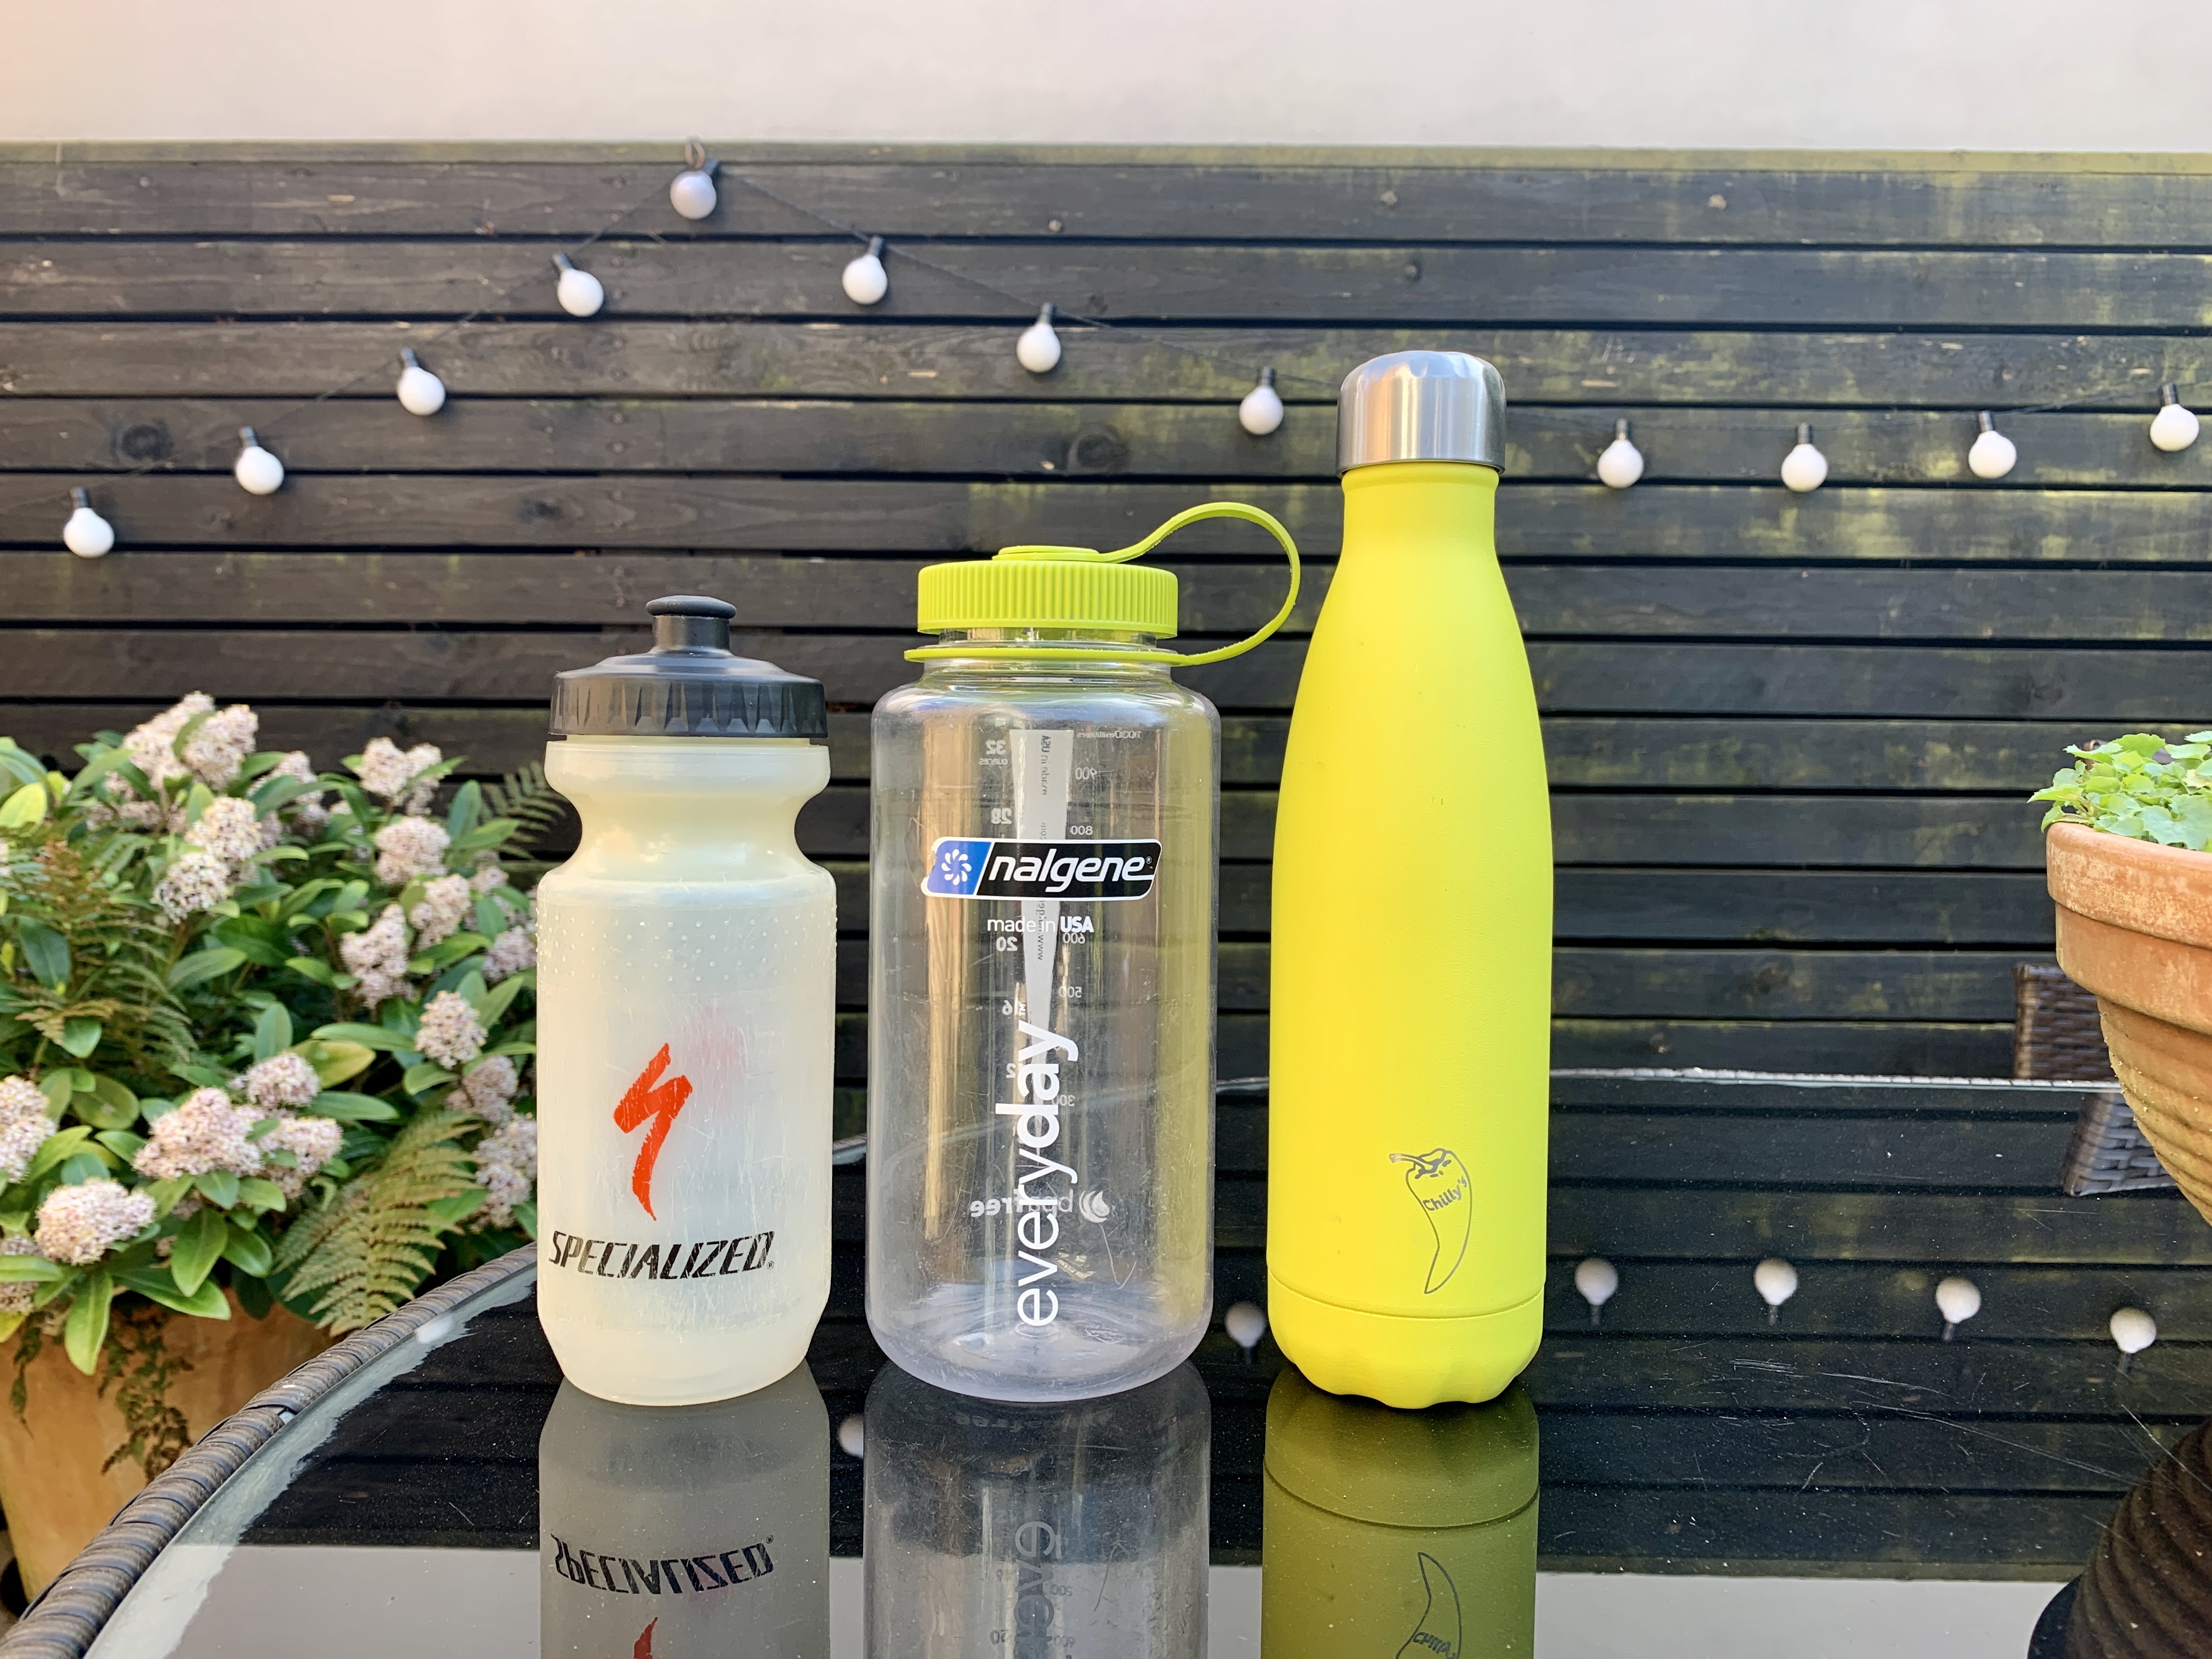 Rubbermaid Refill Reuse 32 oz Water Bottle (1 bottle)